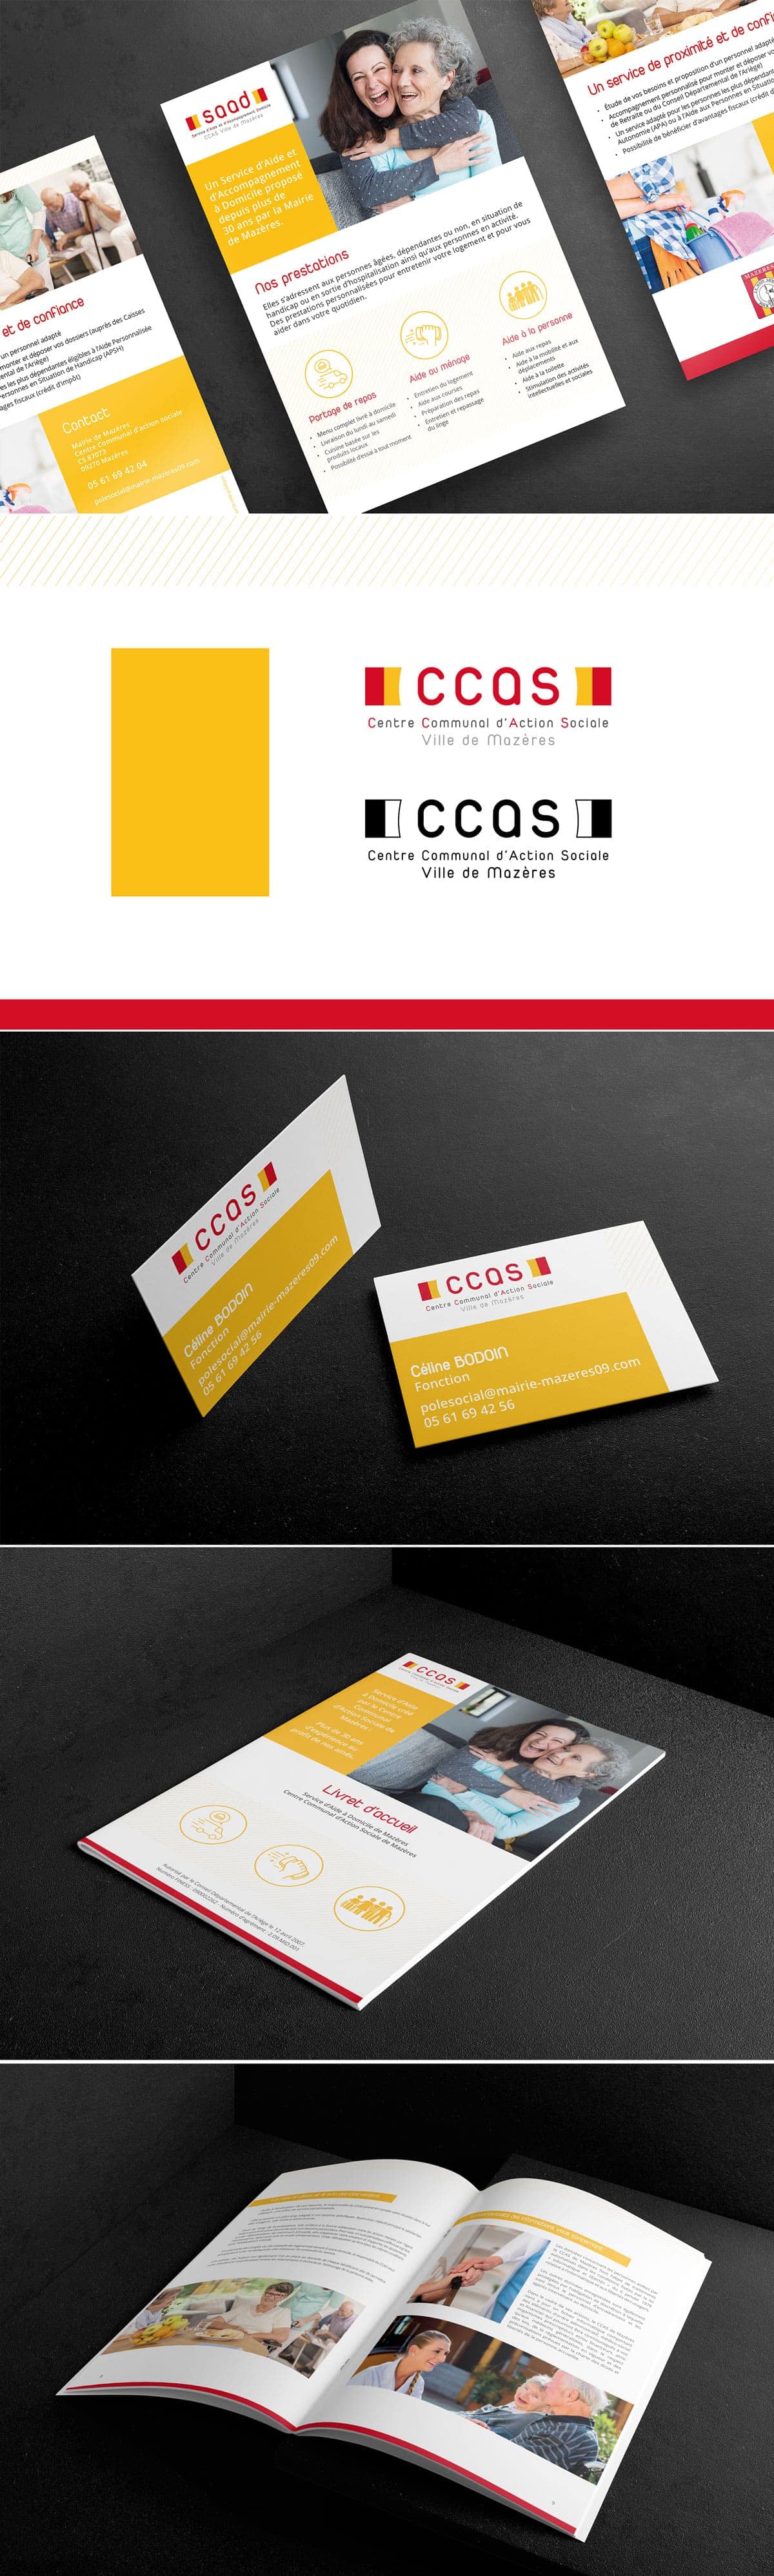 Images de l'identité visuelle du CCAS de la ville de Mazères, avec son logo et ses supports de communication imprimés : son livret d'accueil, son flyer et ses cartes de visite